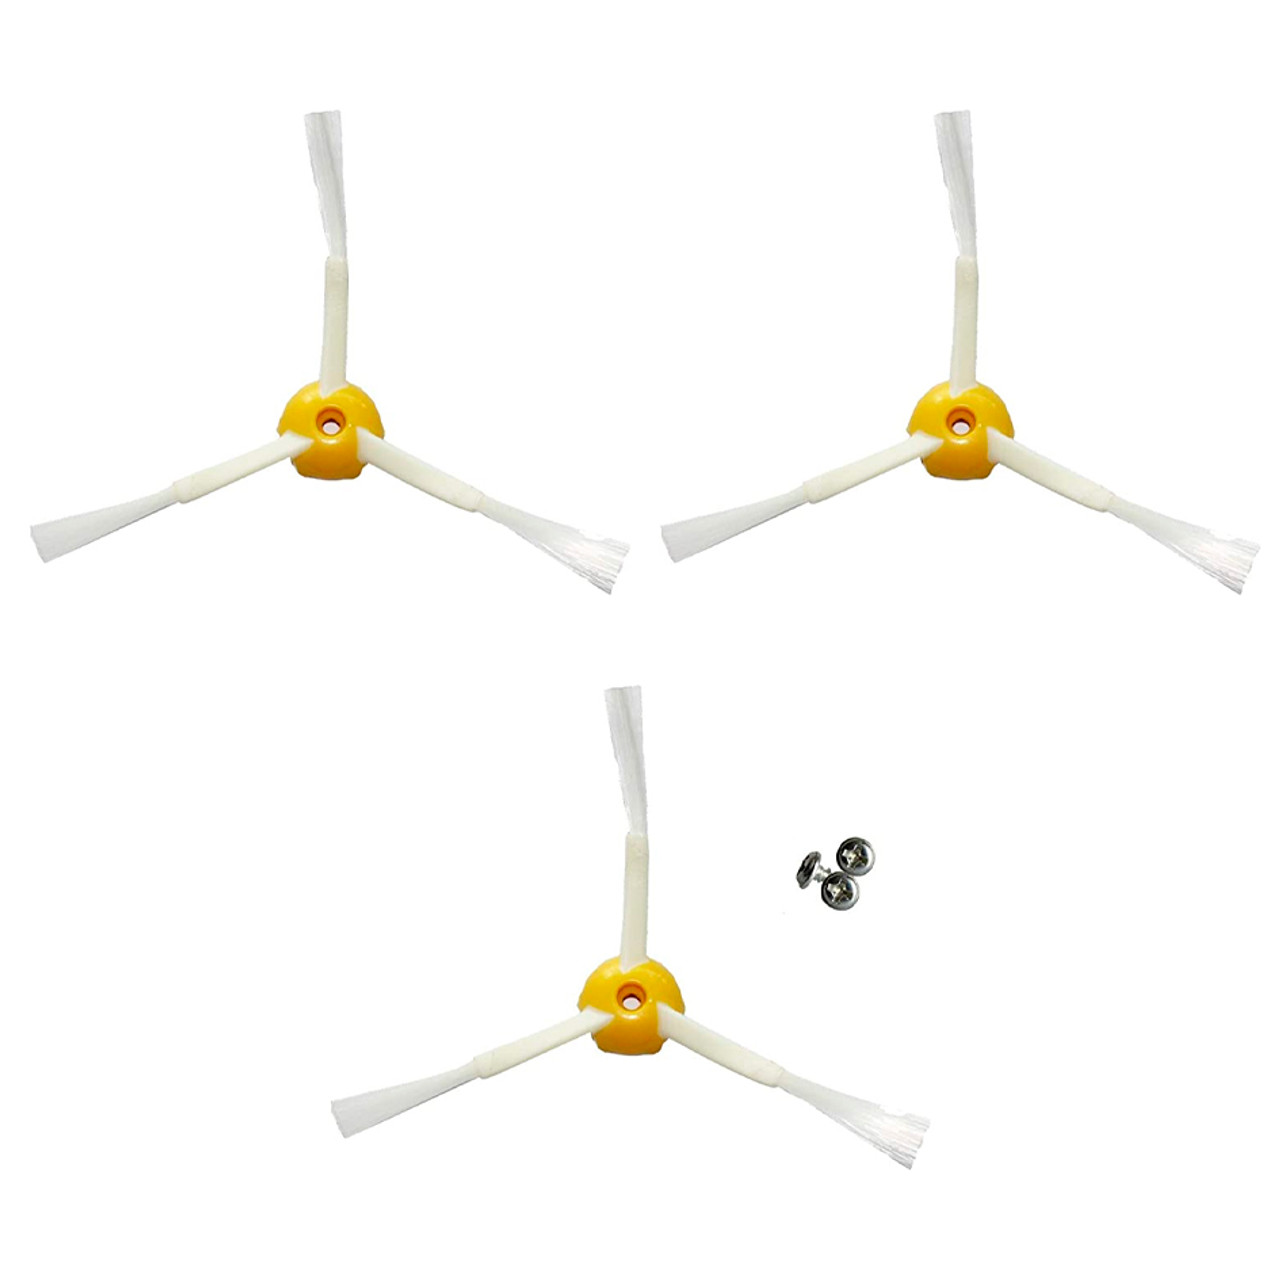 Kit de cepillos para Roomba irobot serie Roomba modelos serie 500/600 - Kit  de 10 piezas accesorias (cepillos laterales, filtros, cepillo Cerda, etc.)  para robot aspirador. JM